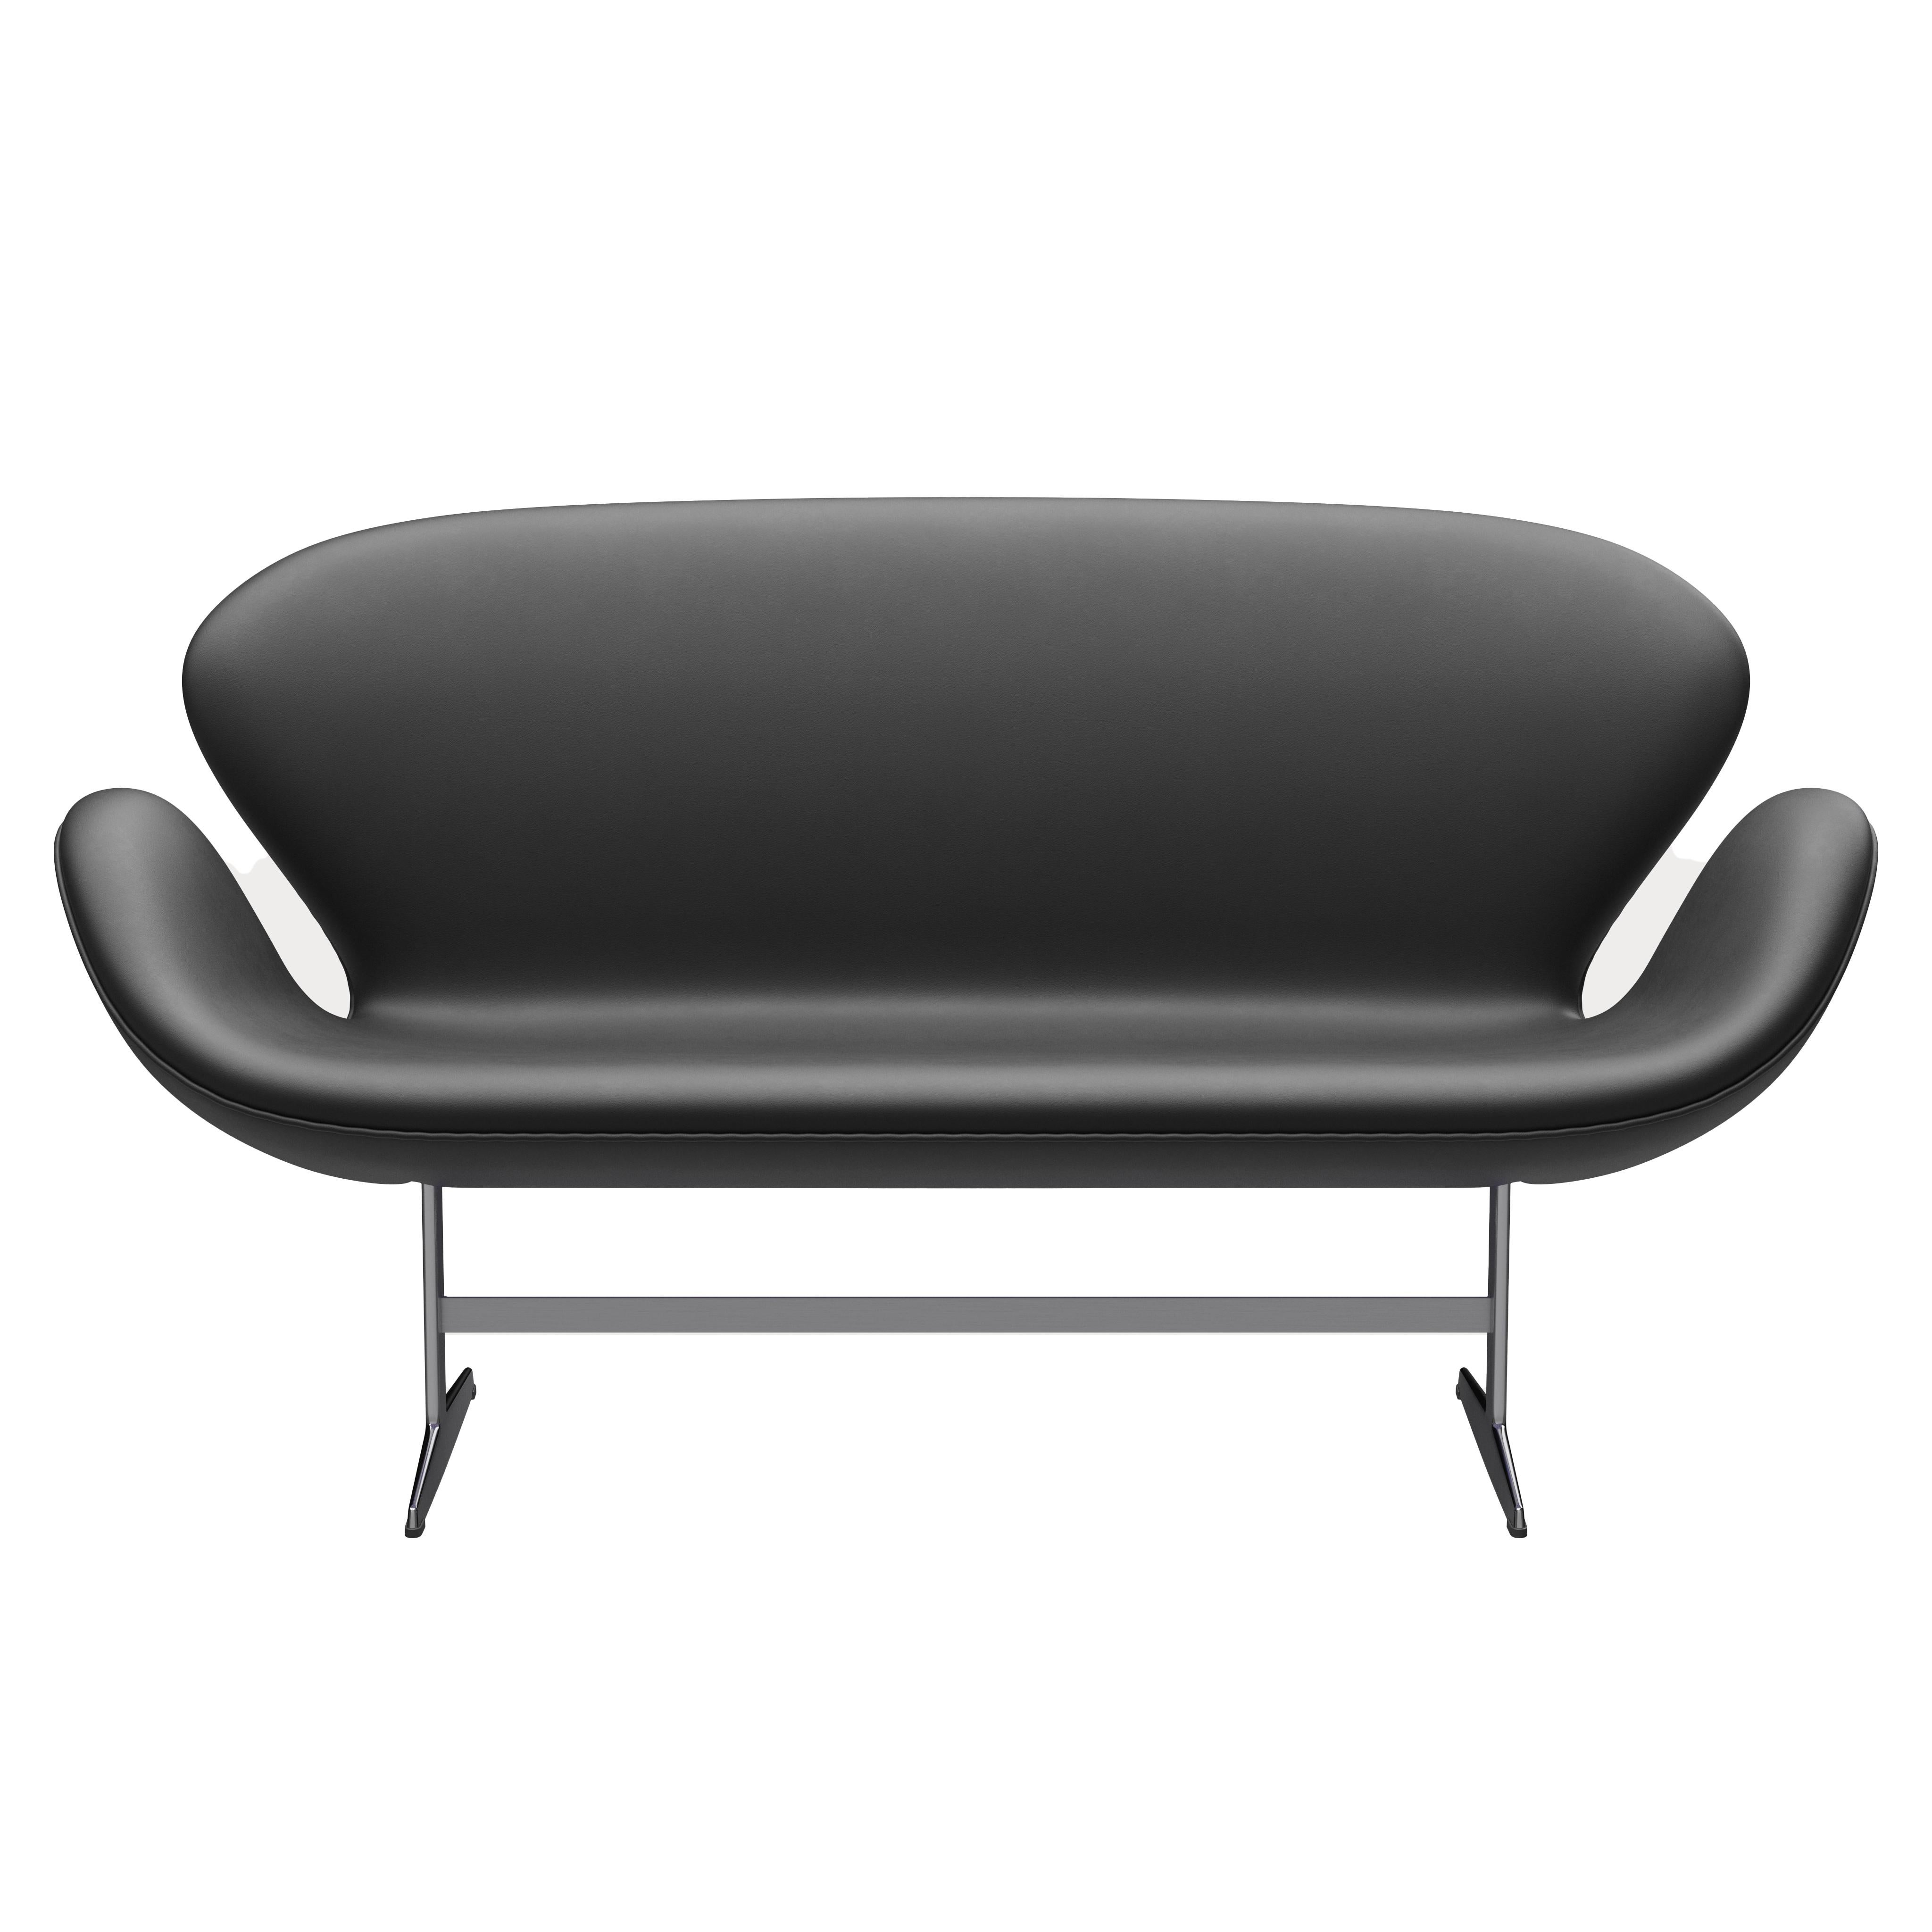 Arne Jacobsen 'Swan' Sofa for Fritz Hansen in Leather Upholstery (Cat. 3) For Sale 1